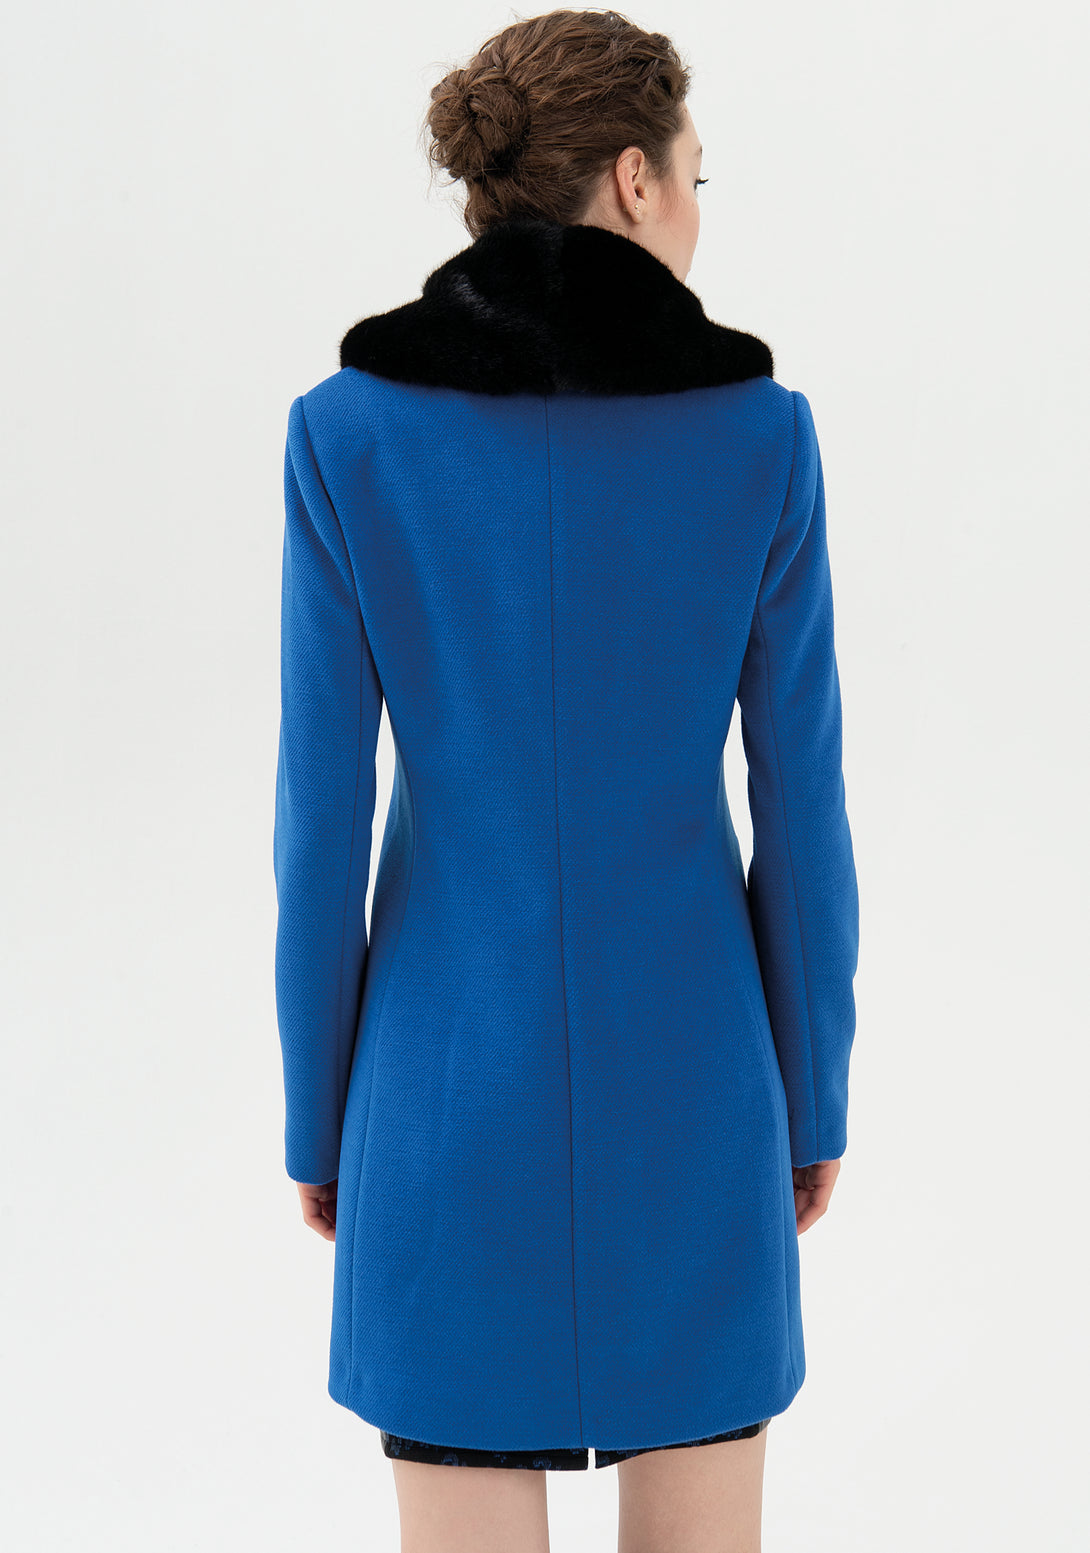 Coat regular fit middle length